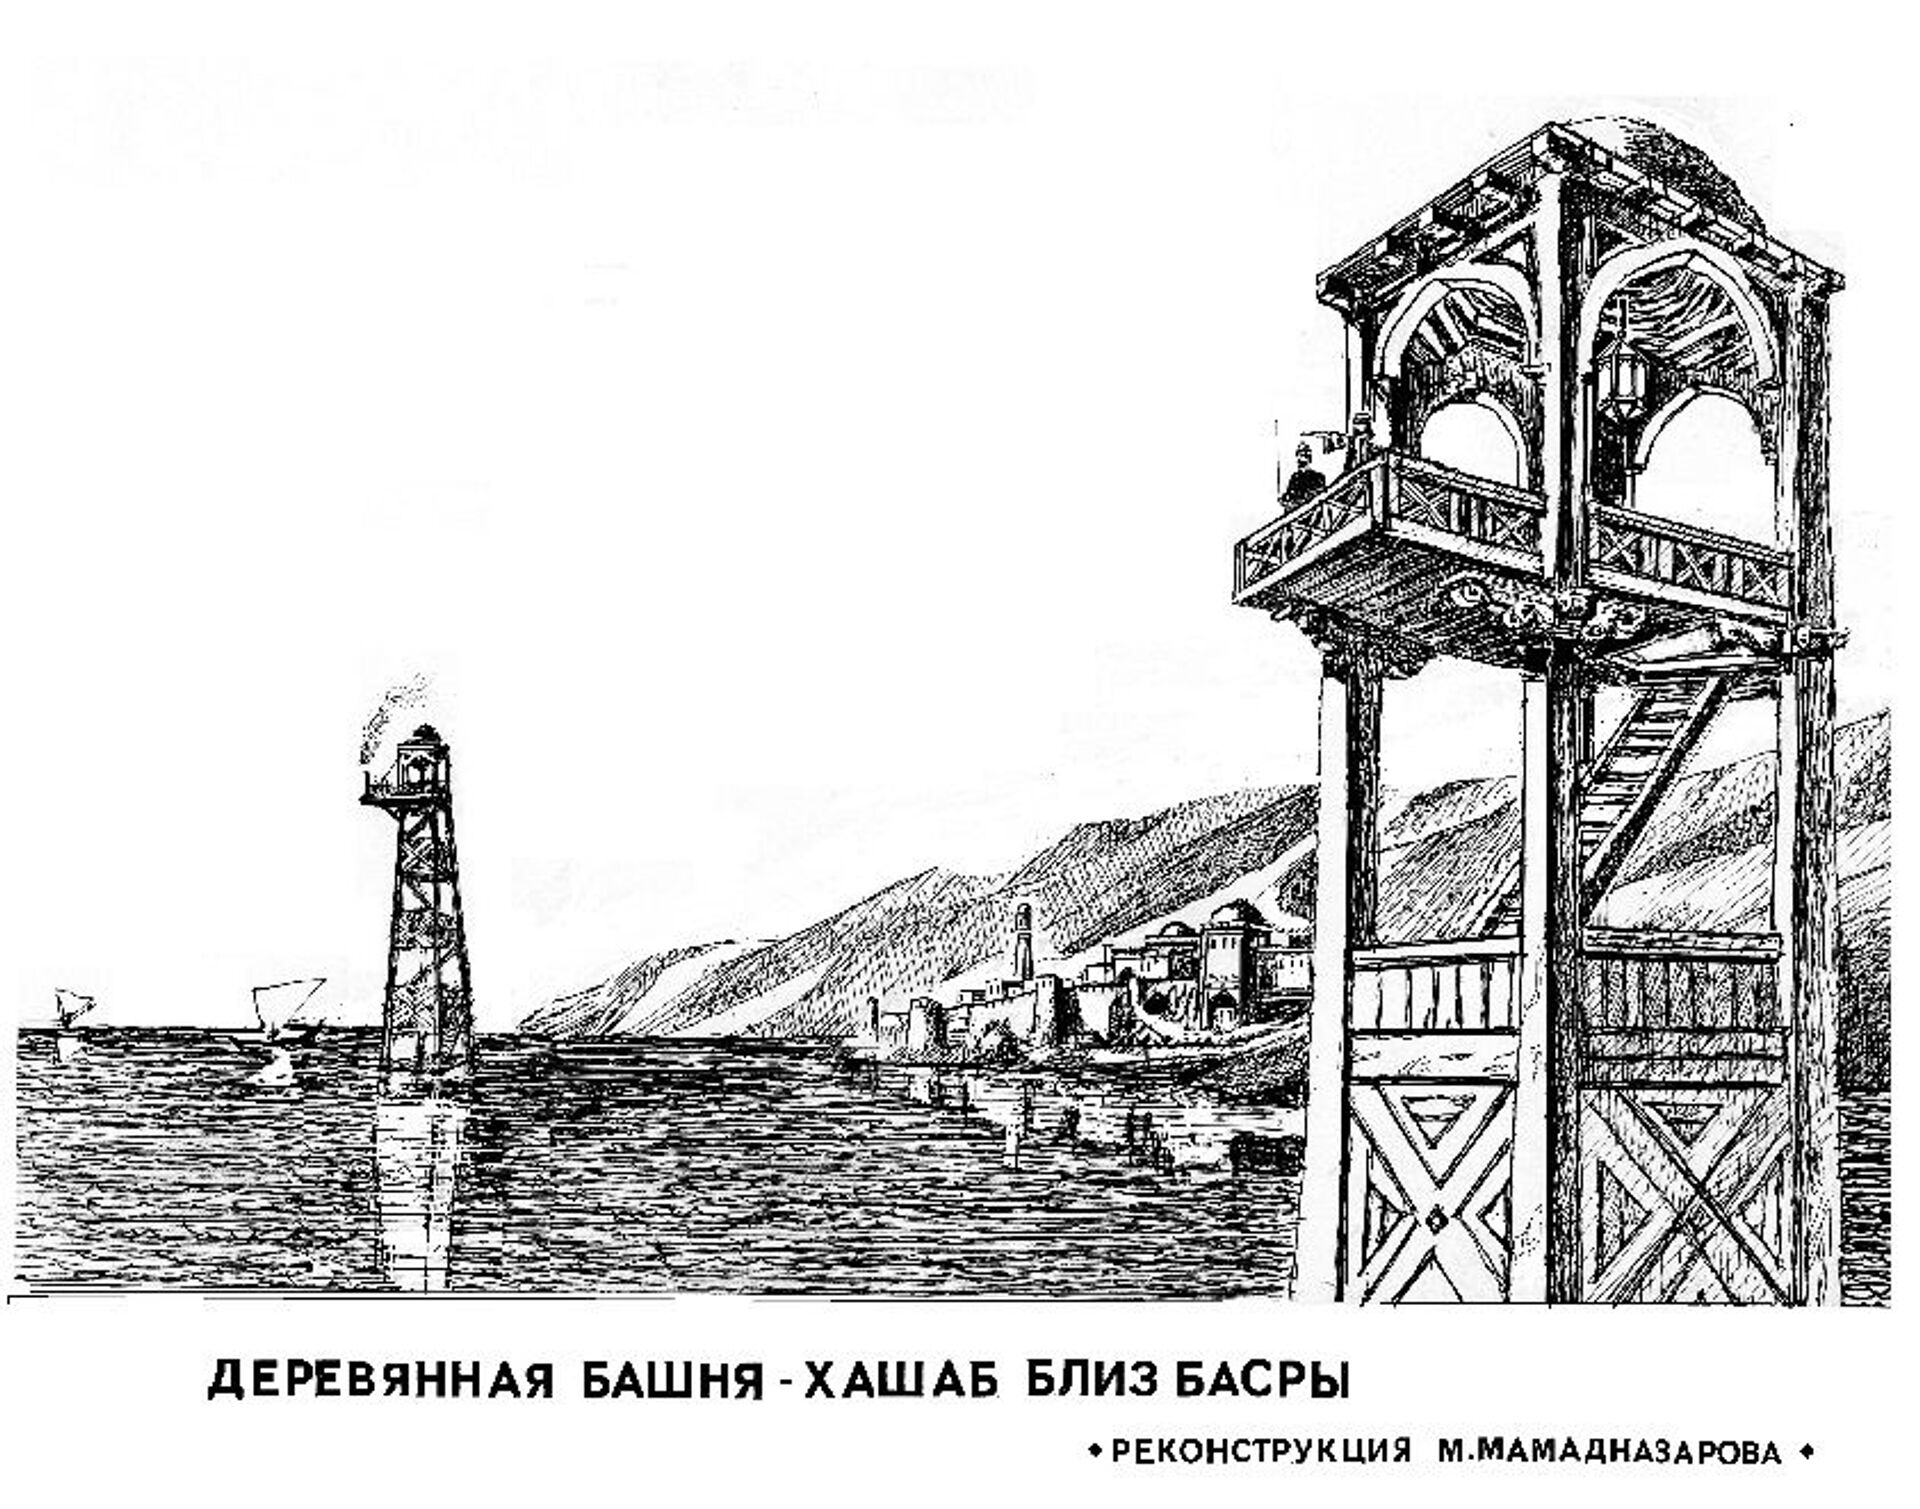 Деревянная Башня-Хашаб близ Басры - Sputnik Таджикистан, 1920, 06.04.2021